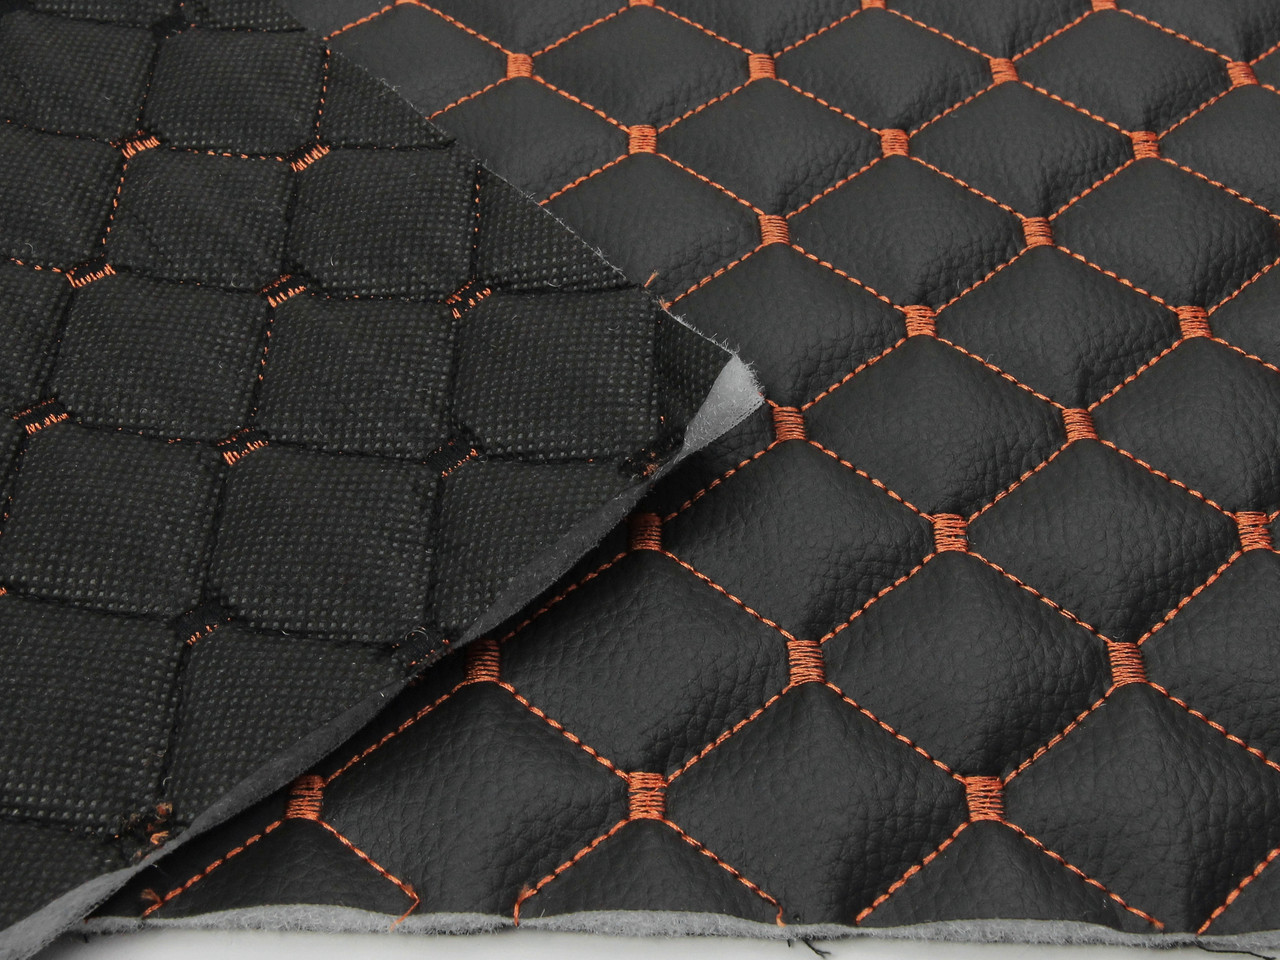 Кожзам стёганый черный «Ромб» (прошитый оранжевой нитью) дублированный синтепоном и флизелином, ширина 1,35м детальная фотка